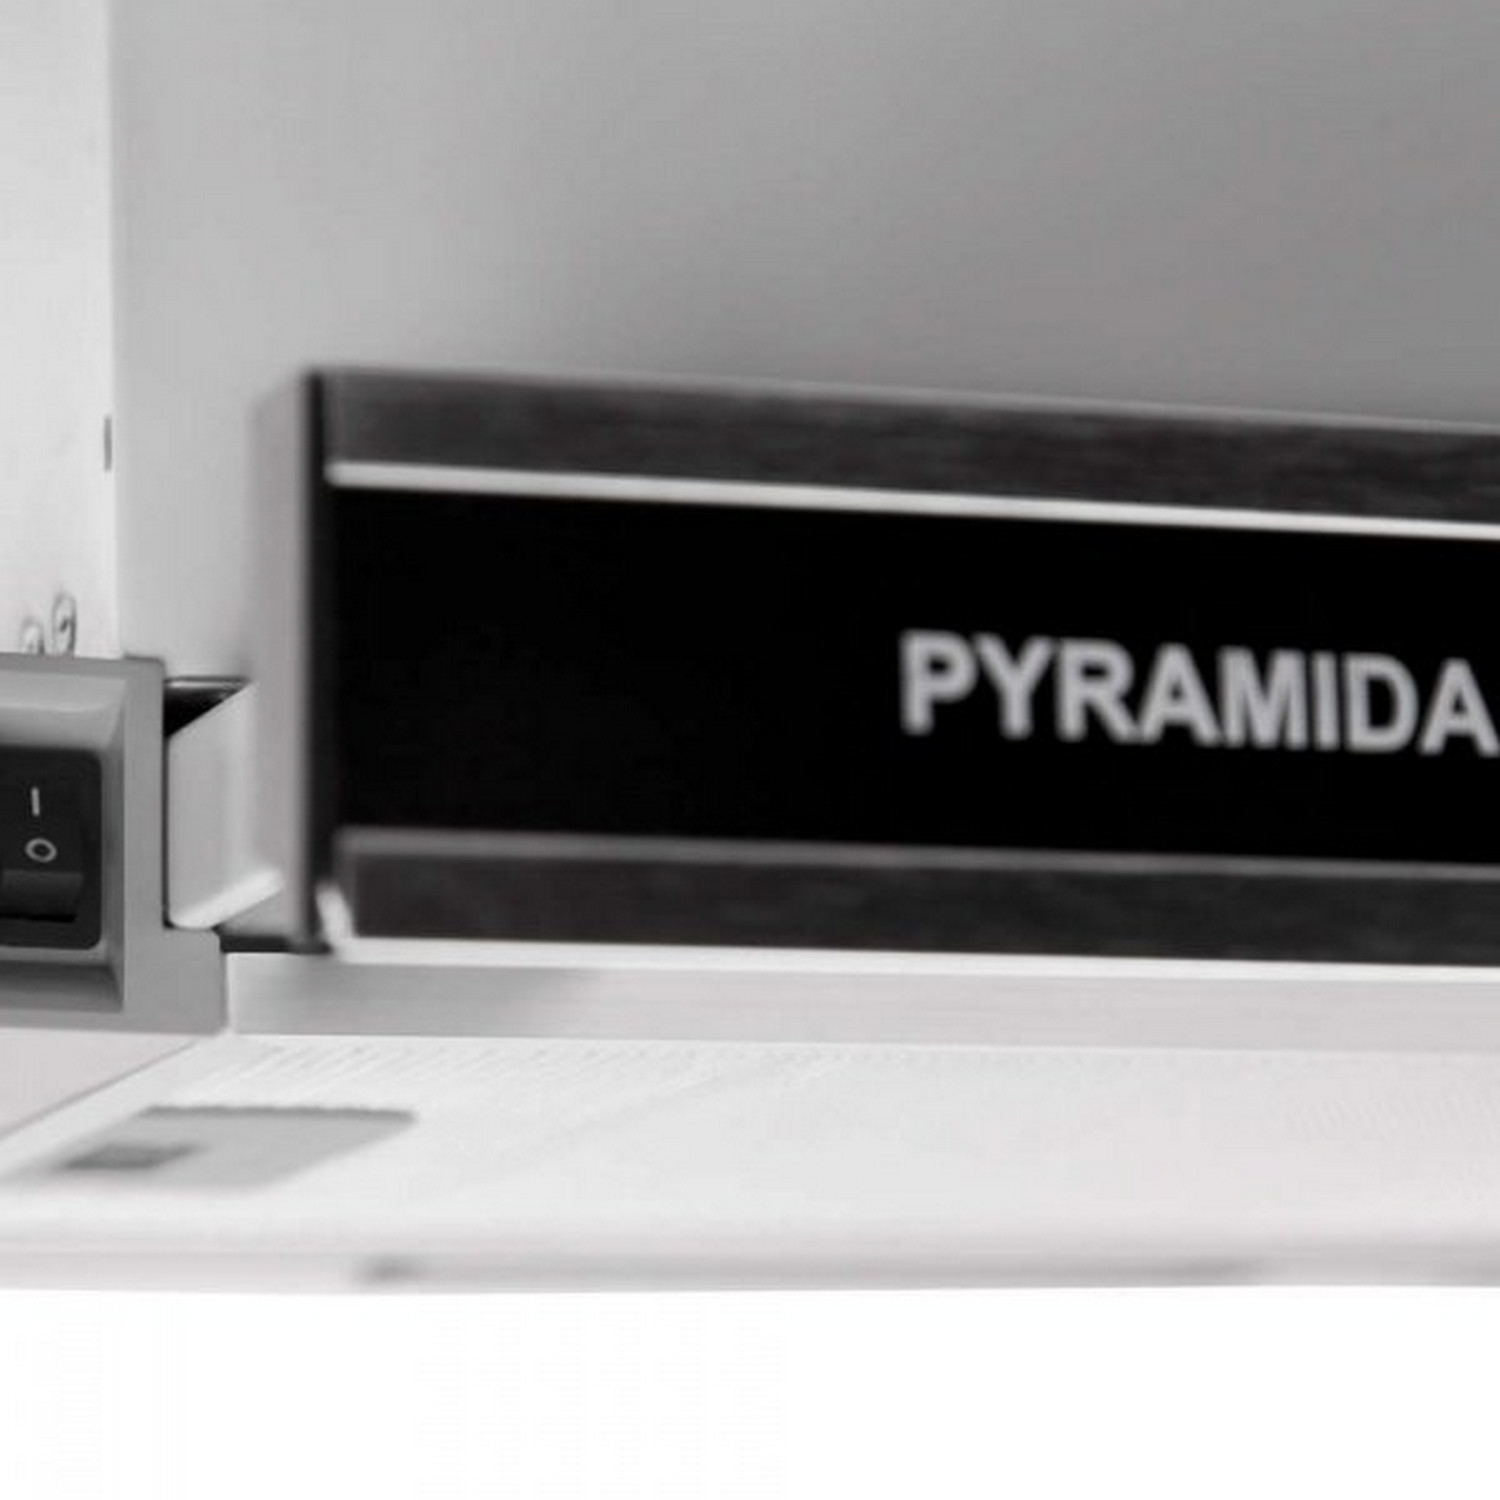 Кухонная вытяжка Pyramida TL Glass 50 Inox Black отзывы - изображения 5